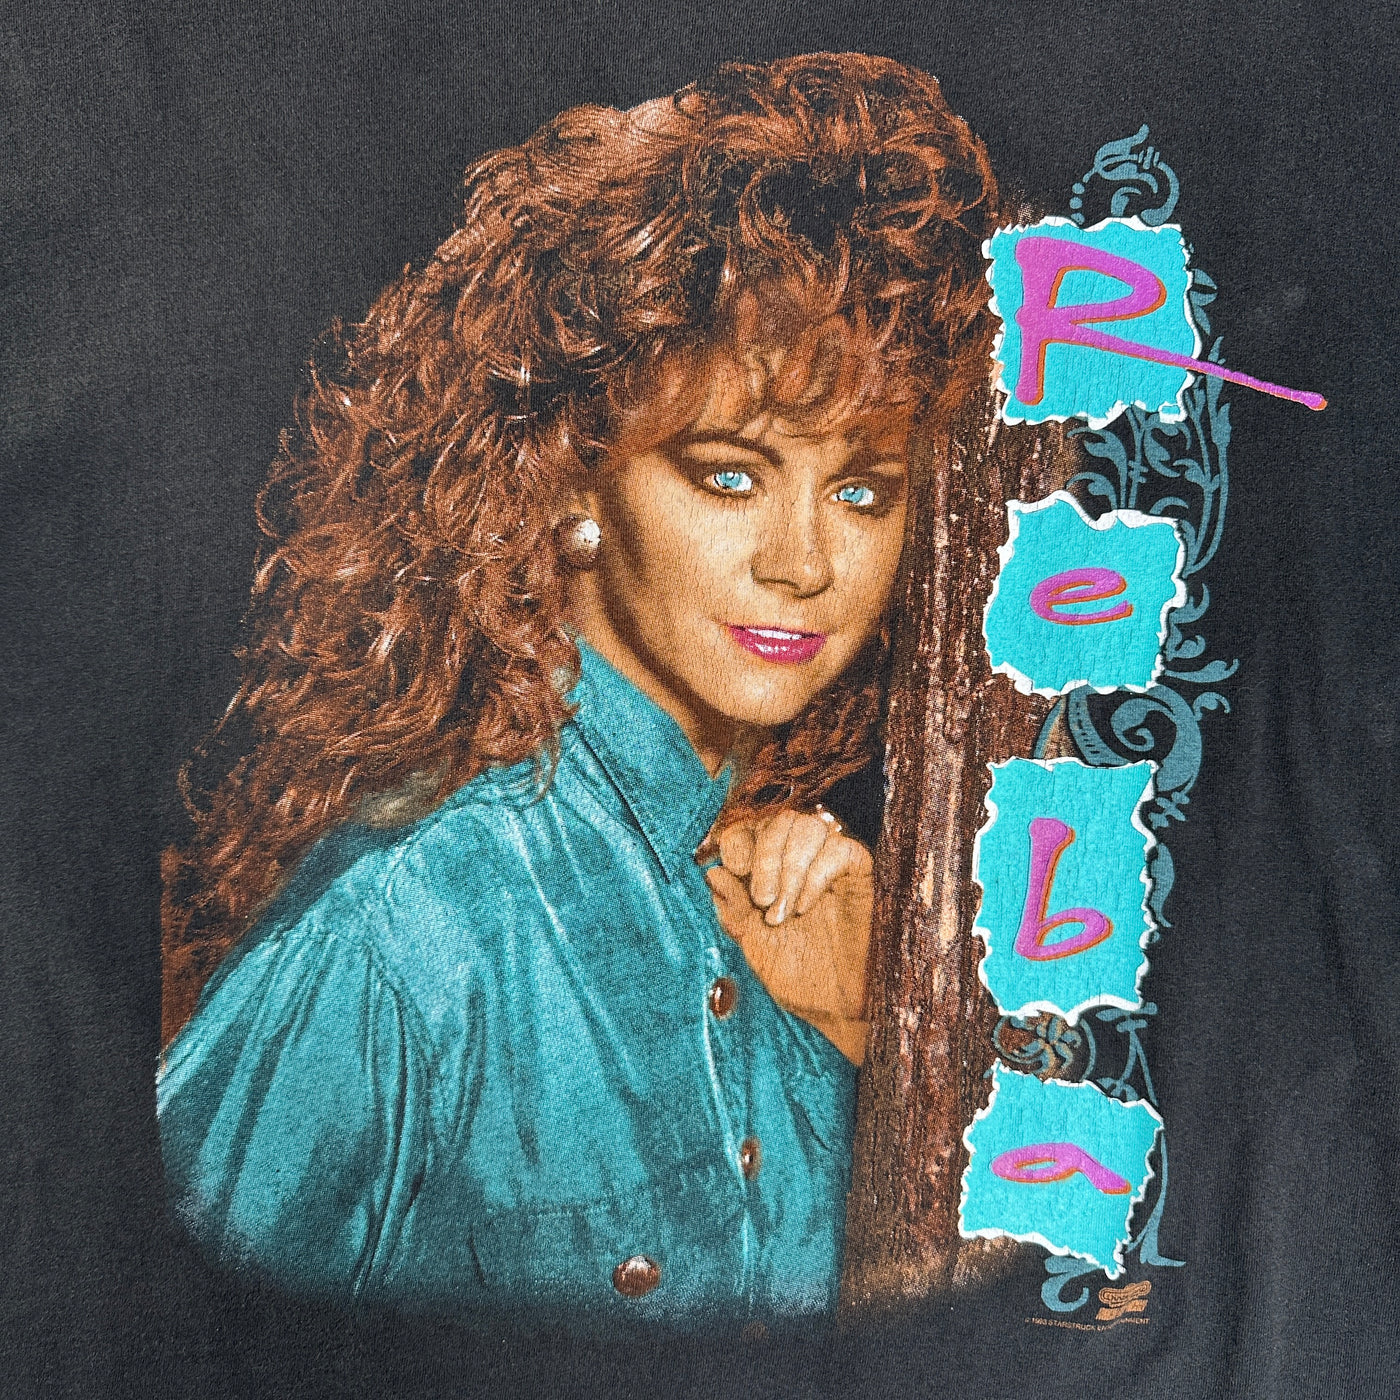 90's Reba It's Your Call Black Music T-shirt sz XL